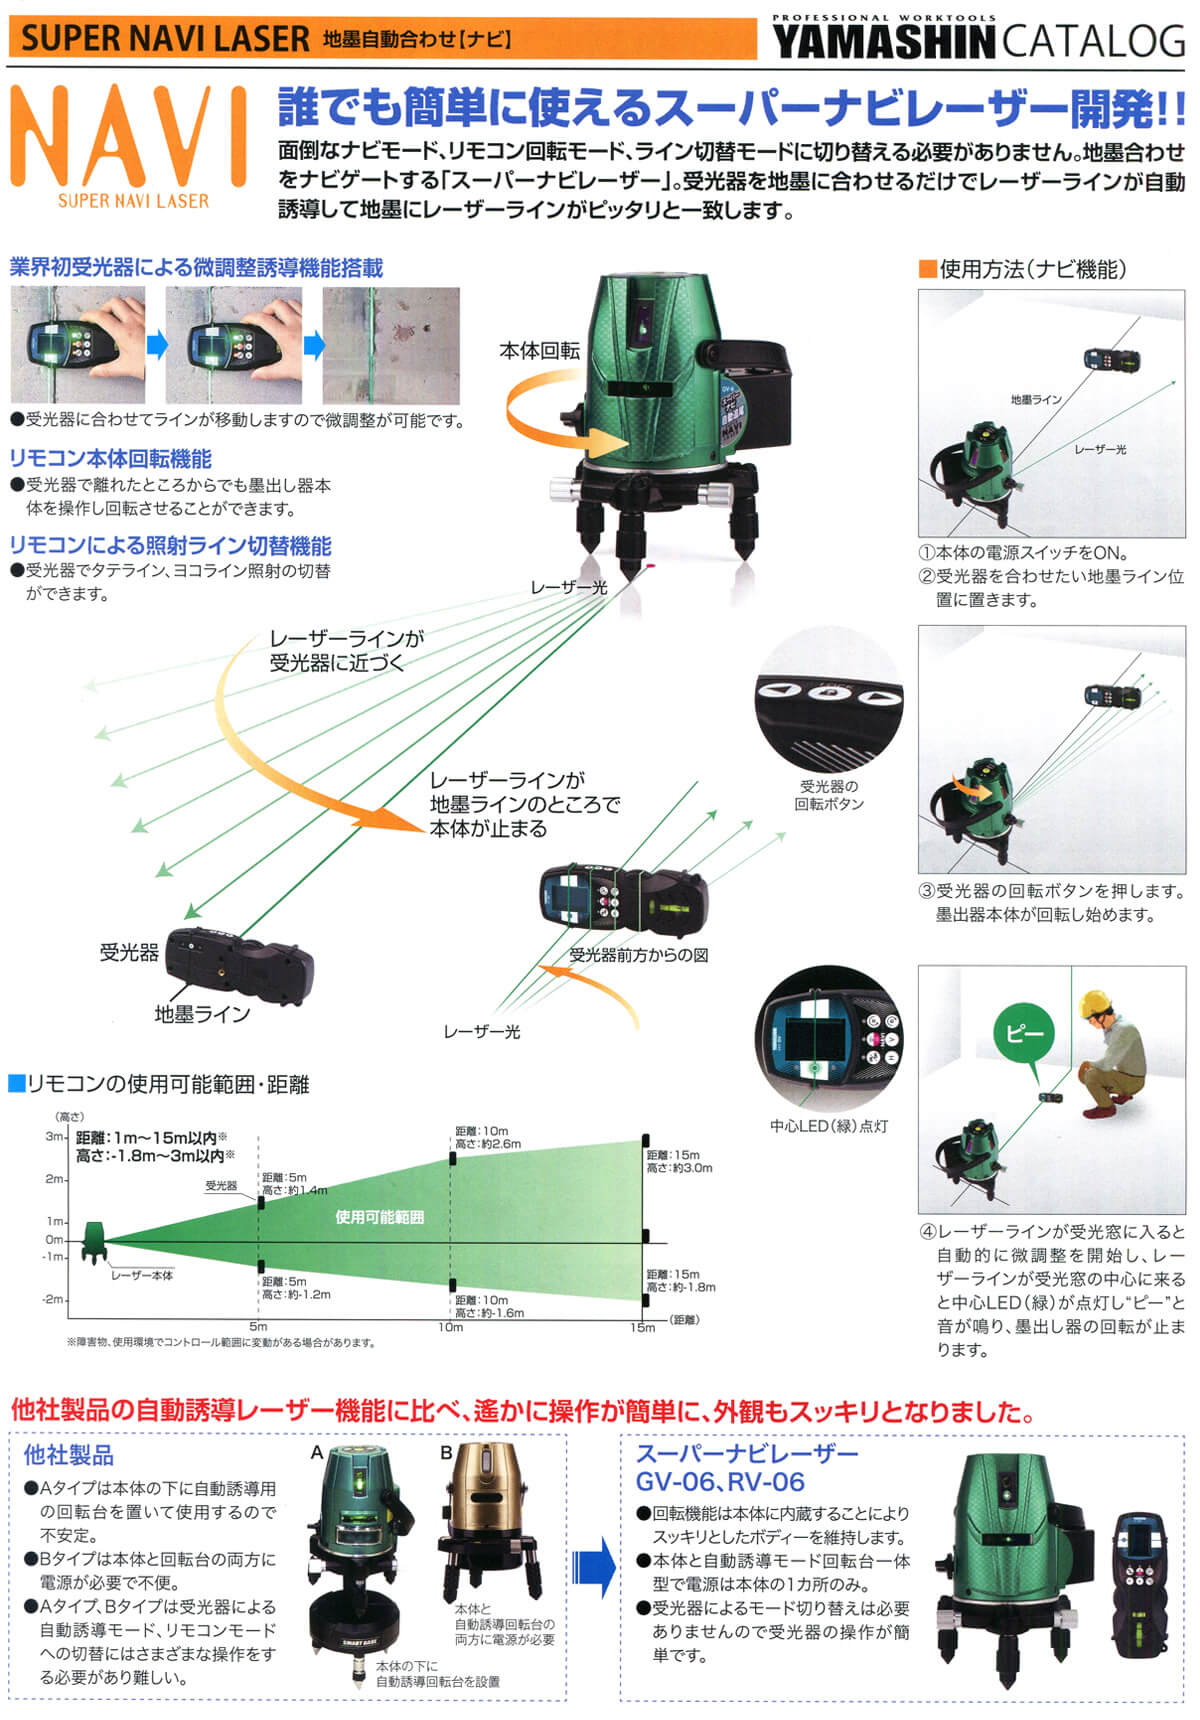  1年保証 山真 YAMASHIN ヤマシン GV-06-W 5ライン 自動誘導 グリーン スーパー シューティング 墨出し器 本体 受光器 三脚 予備電池